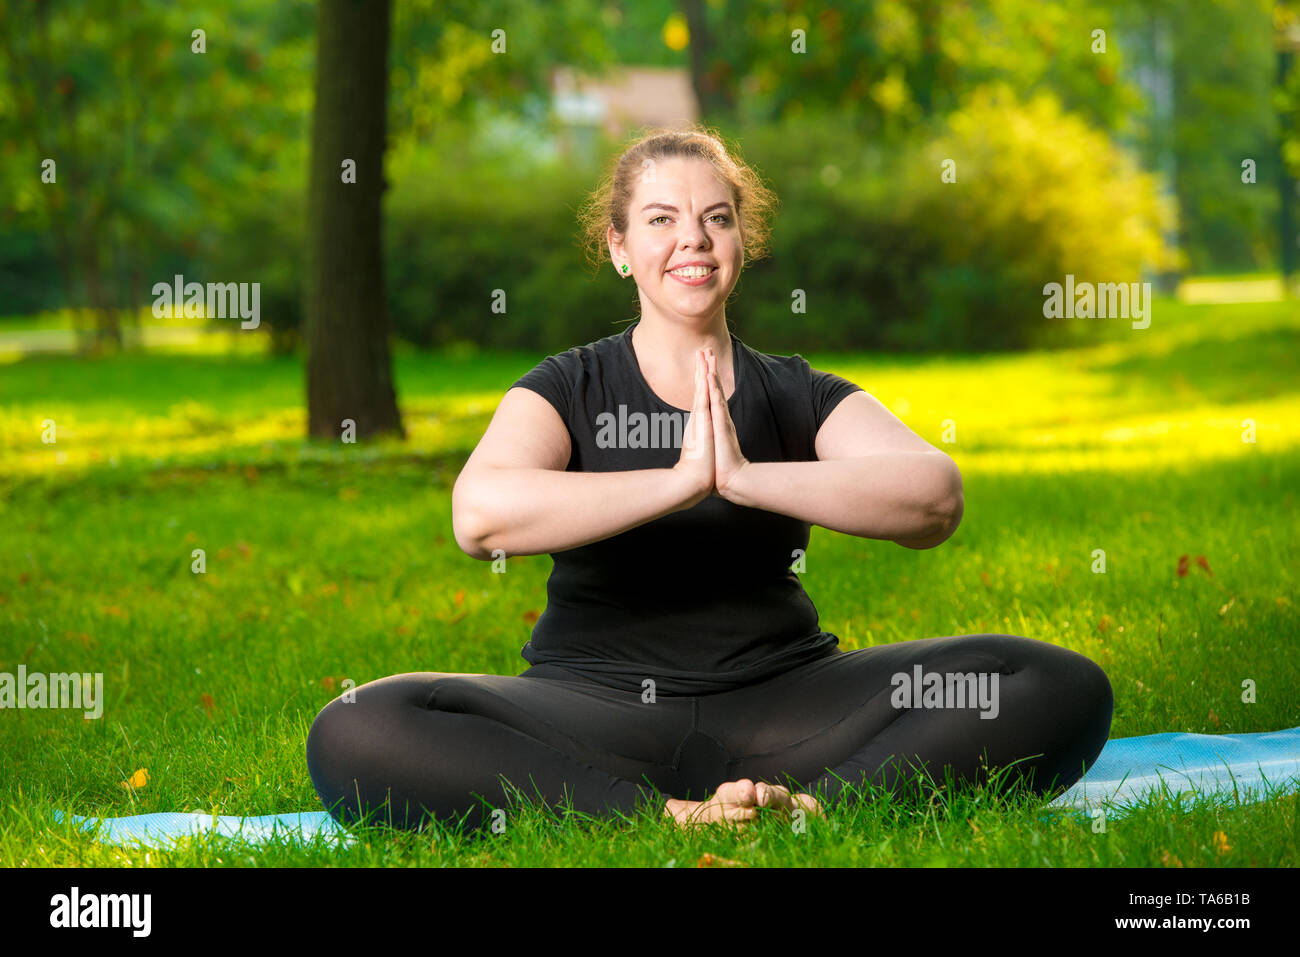 Taglie donna in posa di park di eseguire esercizi in lotus pongono Foto Stock